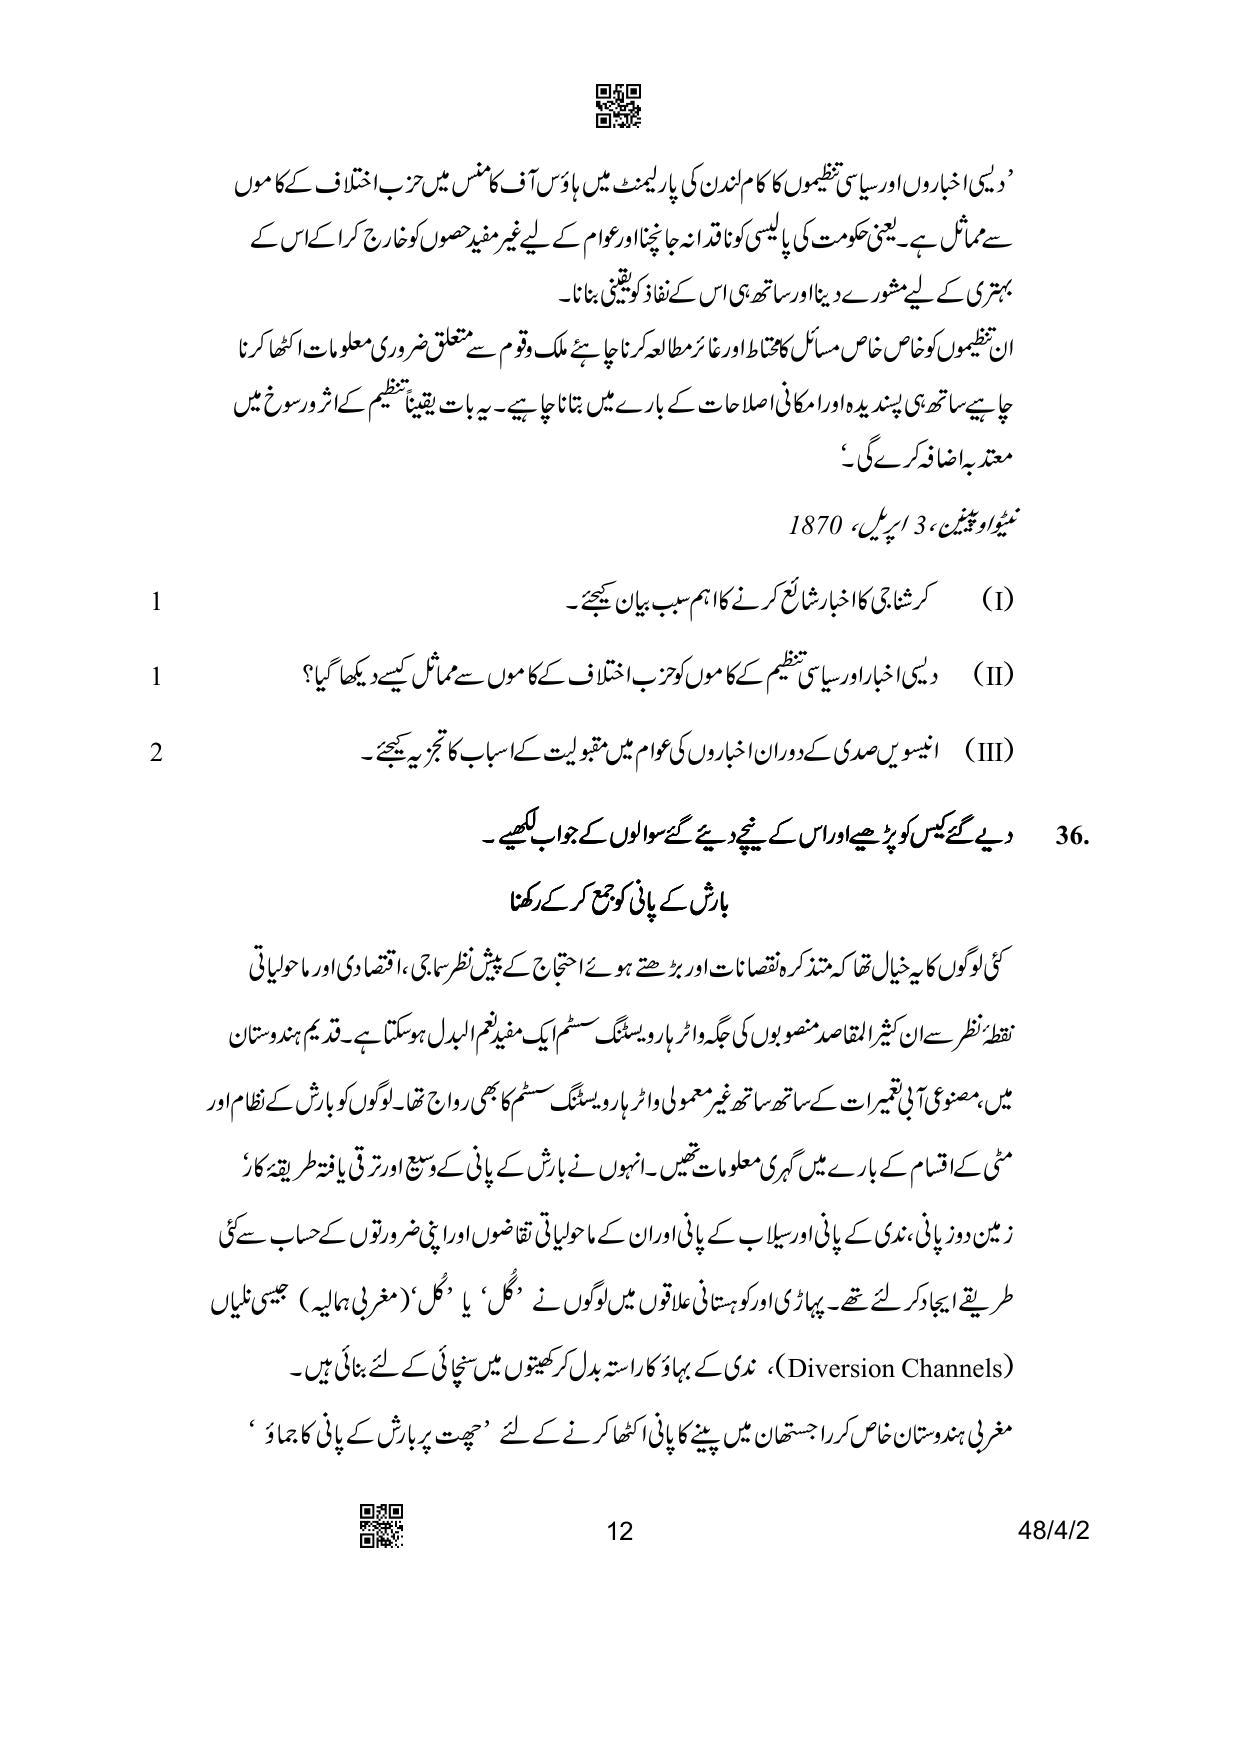 CBSE Class 10 48-4-2 Social Science Urdu Version 2023 Question Paper - Page 12